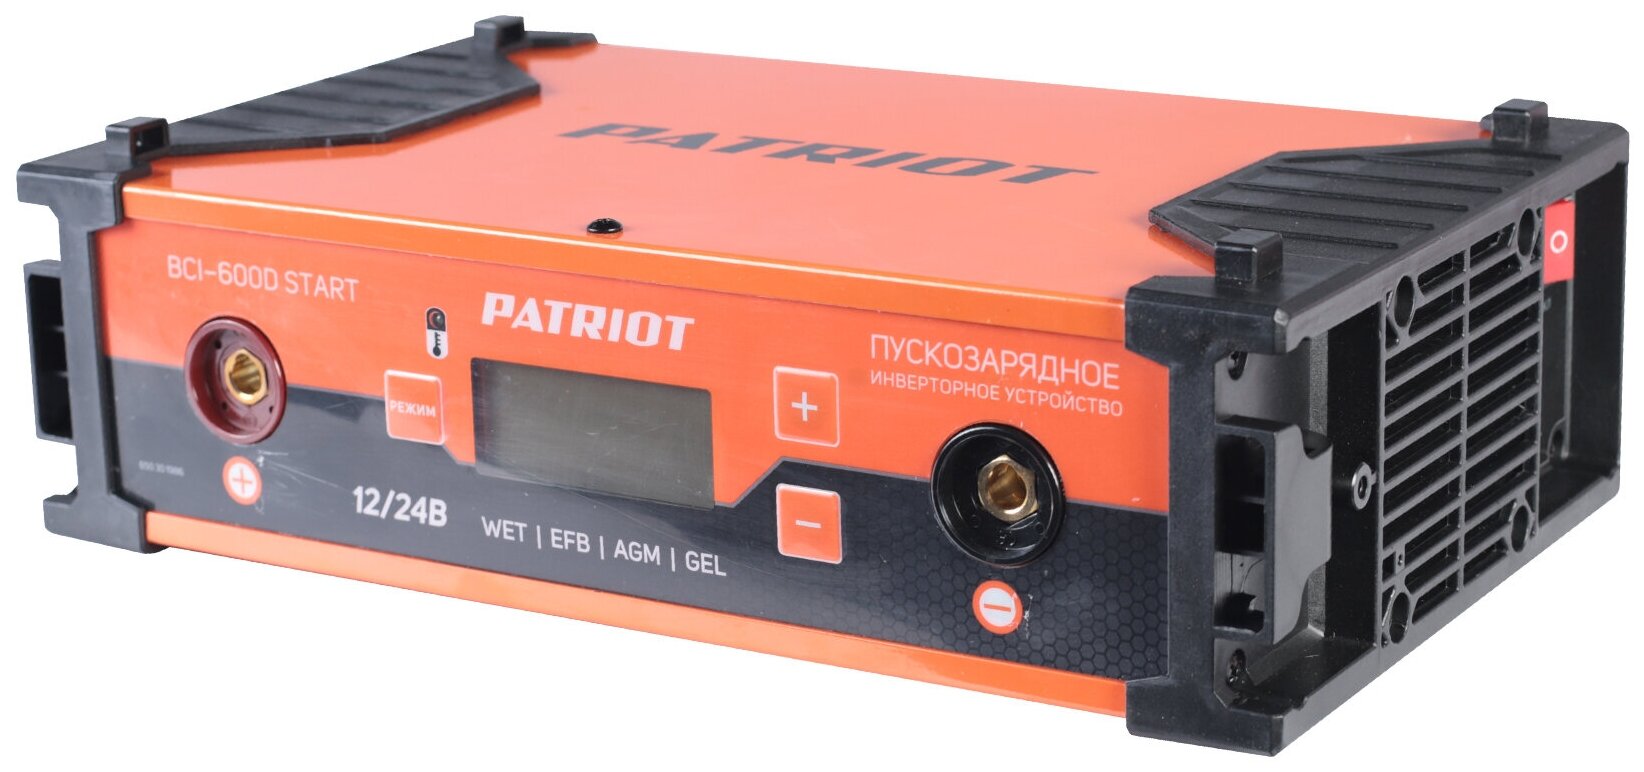 Пускозарядное инверторное устройство PATRIOT BCI-600D-Start